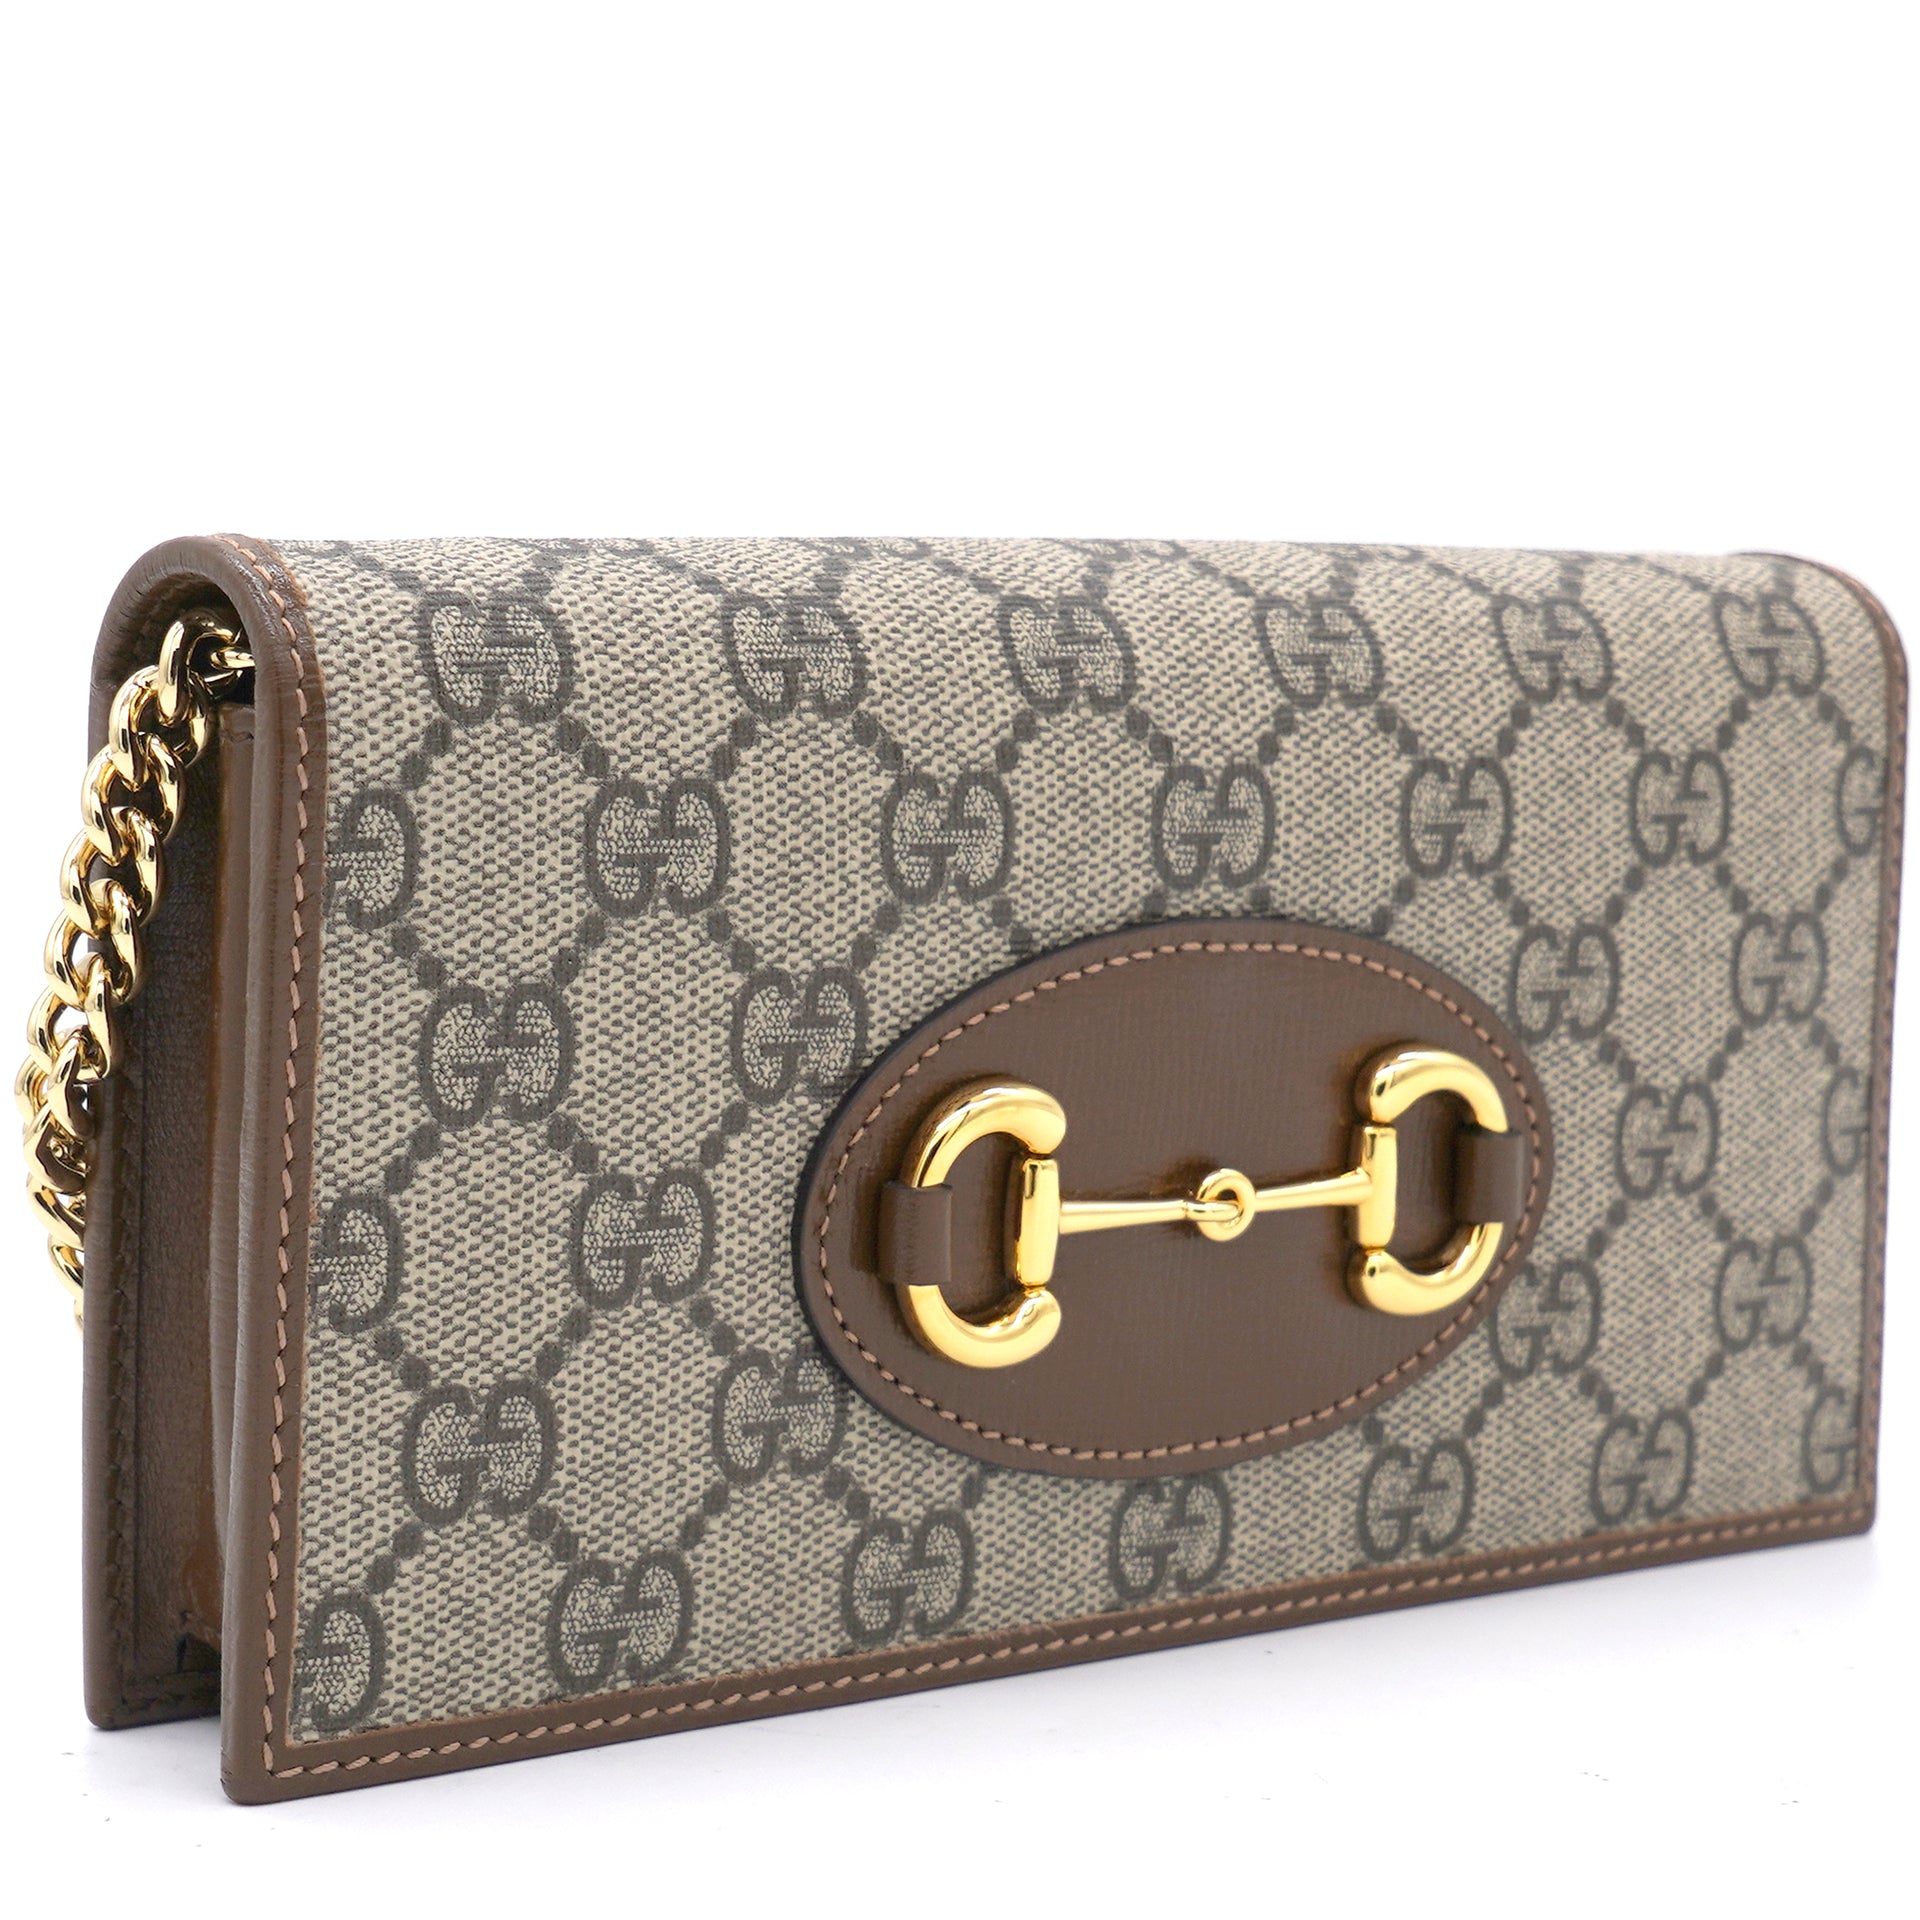 Gucci GG supreme 1955 WOC chain wallets purse pochette new 2020